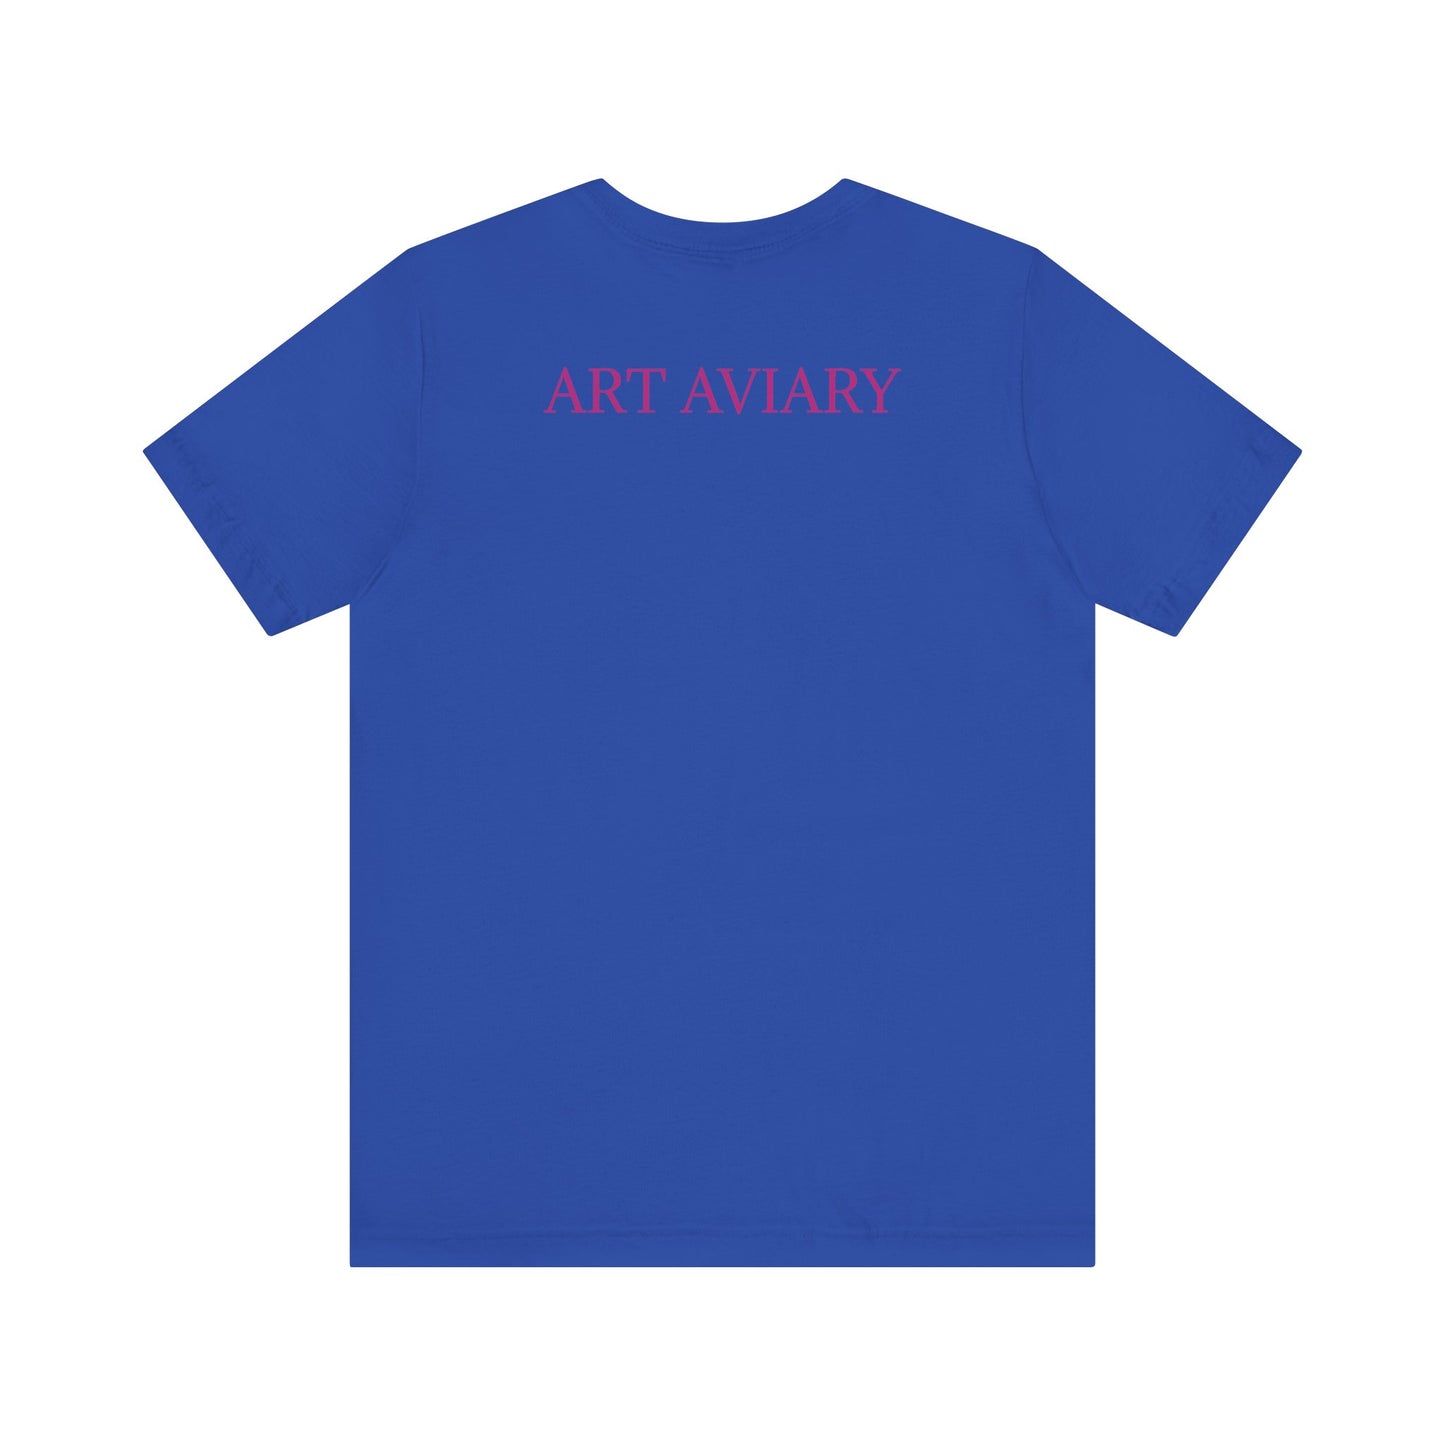 Slogan tee shirt (adult)